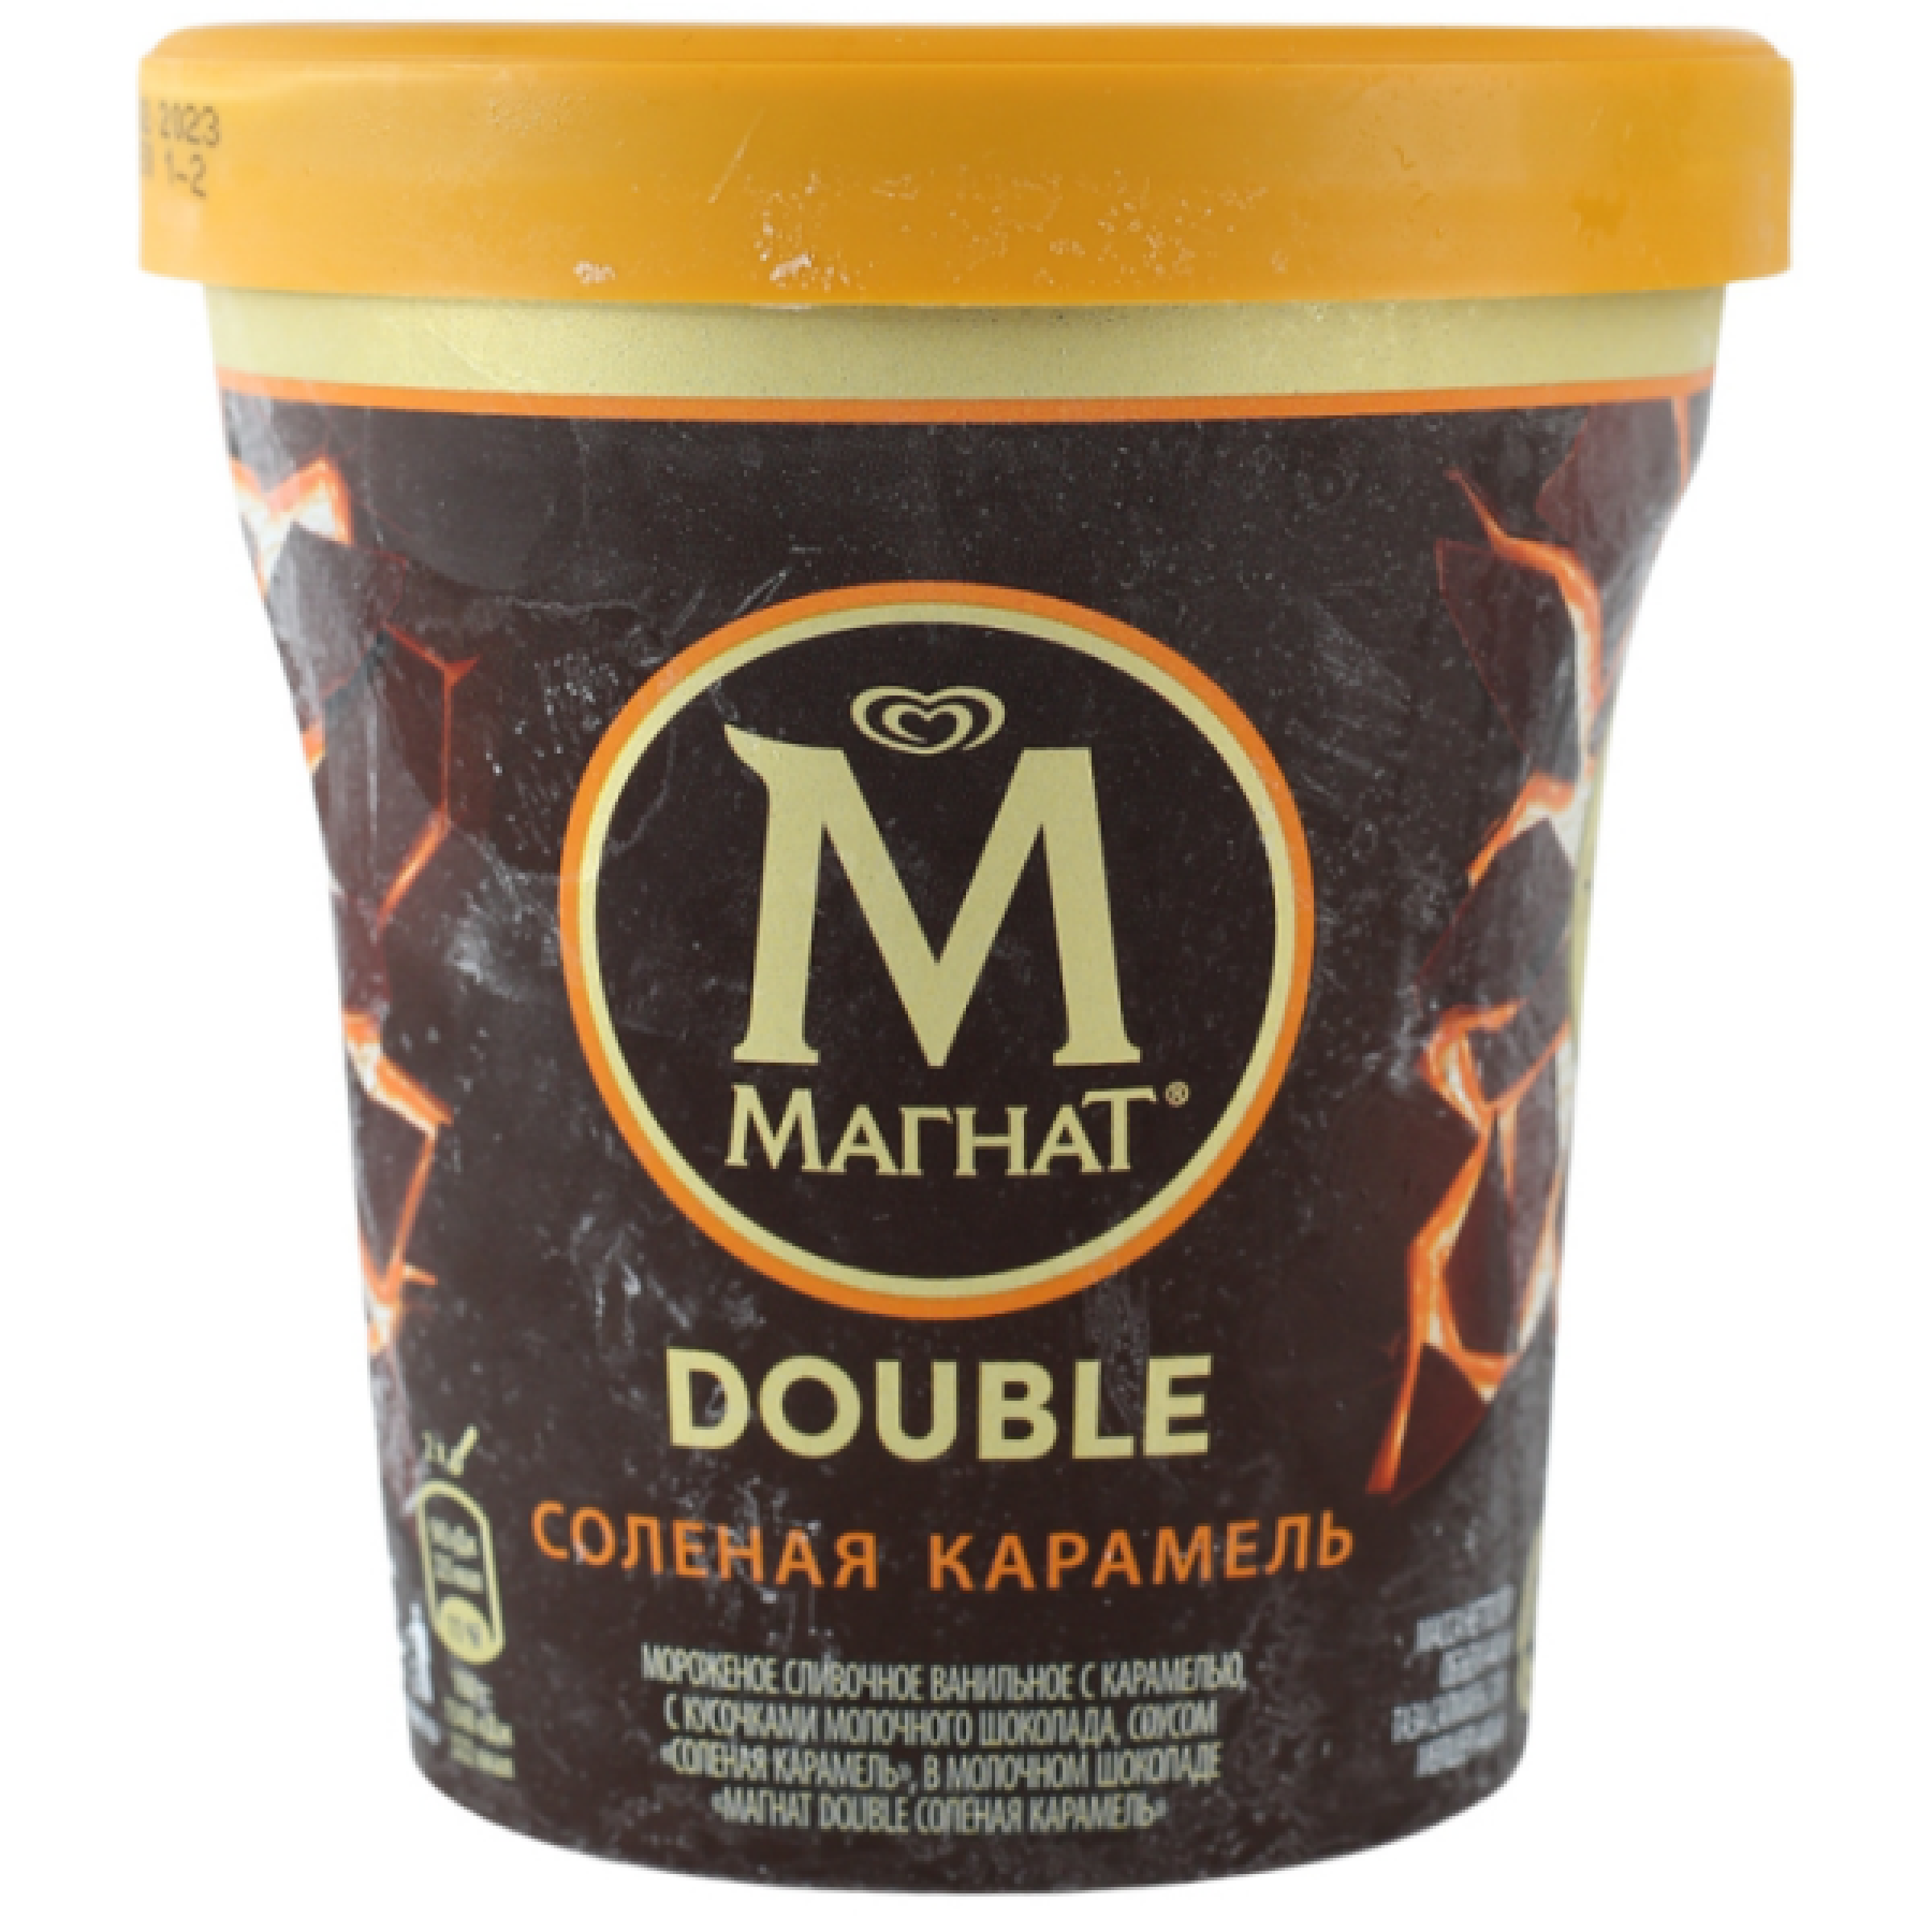 Мороженое МАГНАТ Double соленая карамель, 310 г